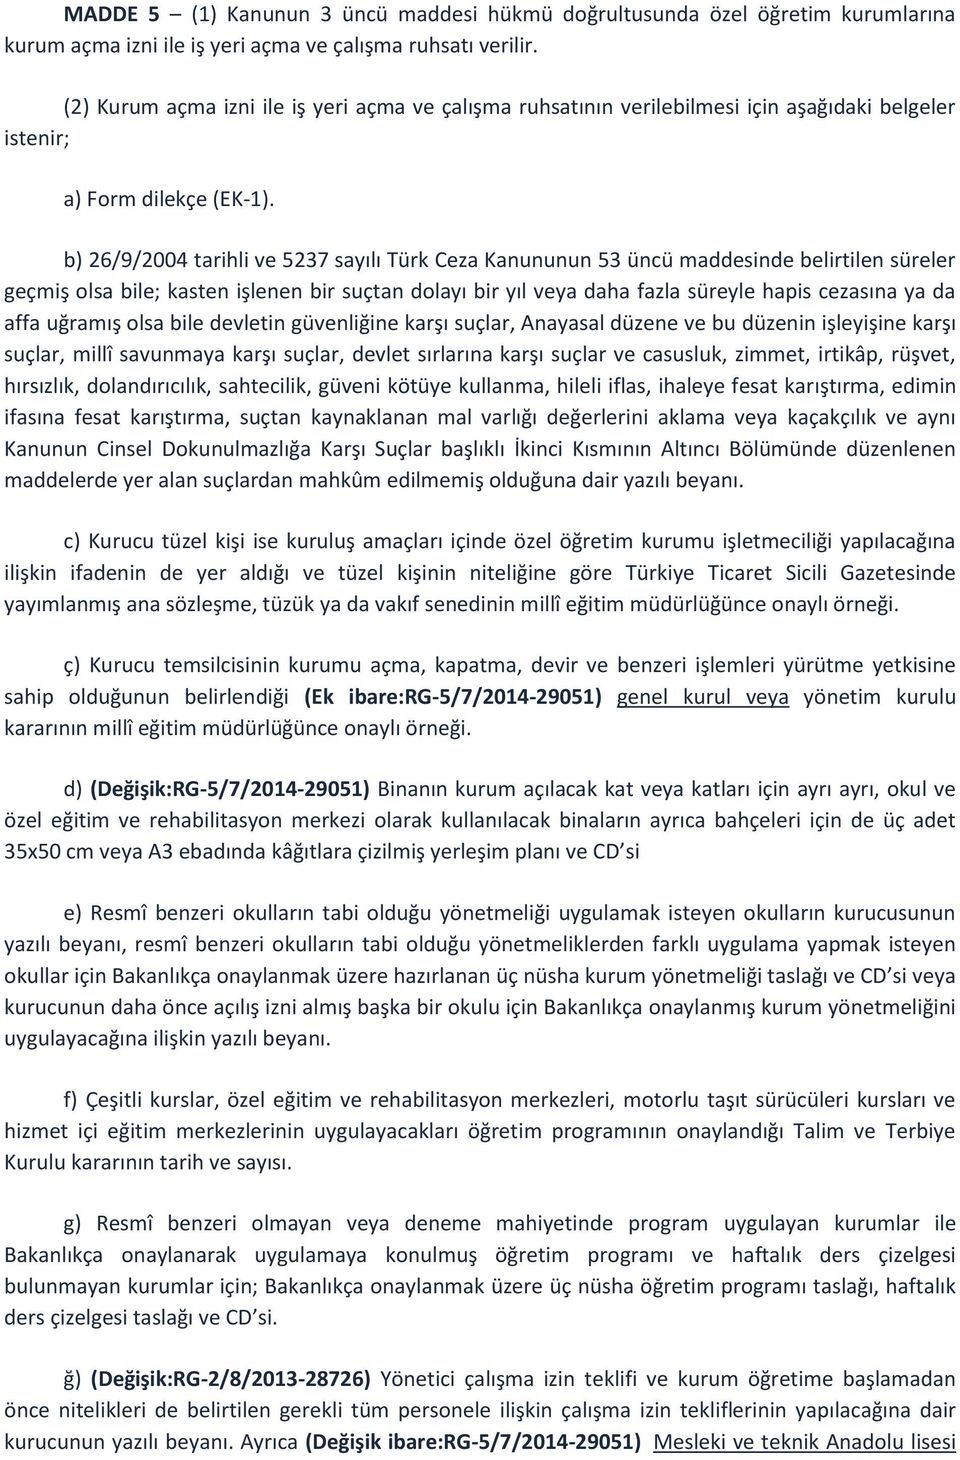 b) 26/9/2004 tarihli ve 5237 sayılı Türk Ceza Kanununun 53 üncü maddesinde belirtilen süreler geçmiş olsa bile; kasten işlenen bir suçtan dolayı bir yıl veya daha fazla süreyle hapis cezasına ya da